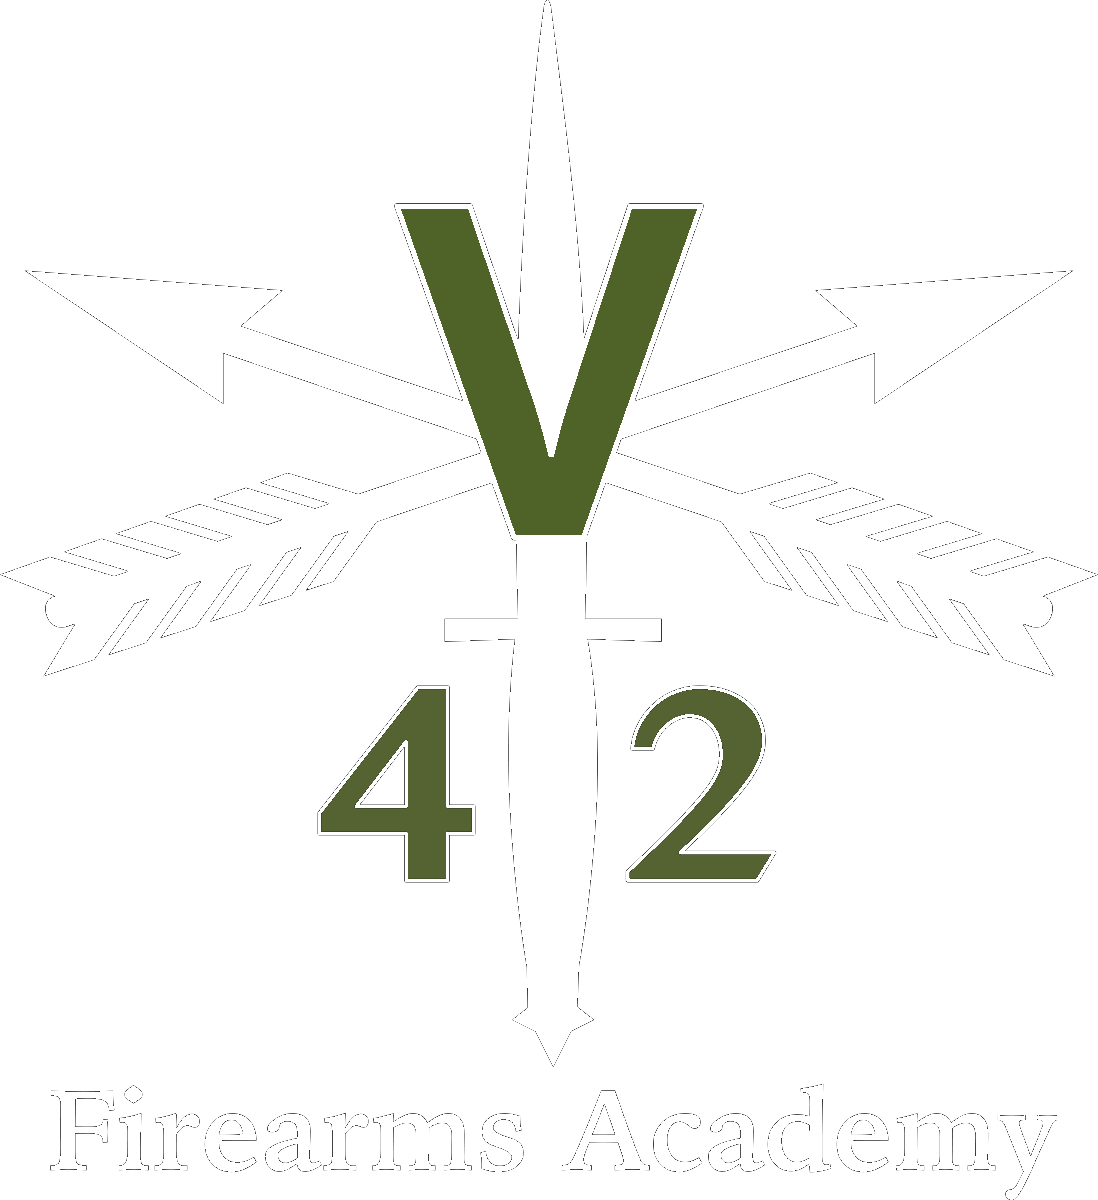 V42 Firearms Academy